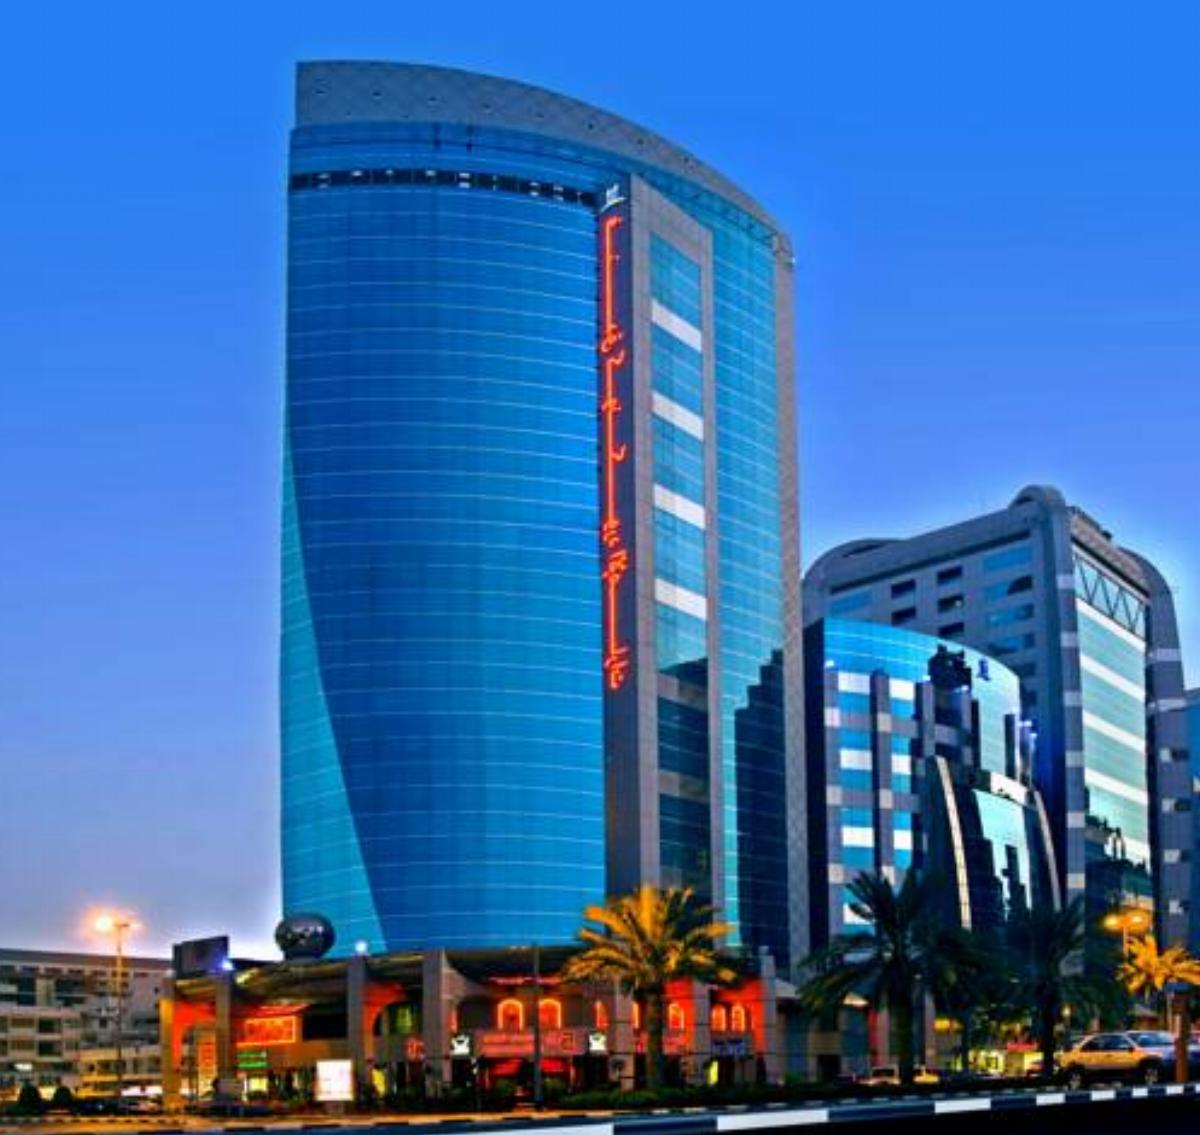 Emirates Concorde Hotel & Apartments Hotel Dubai United Arab Emirates